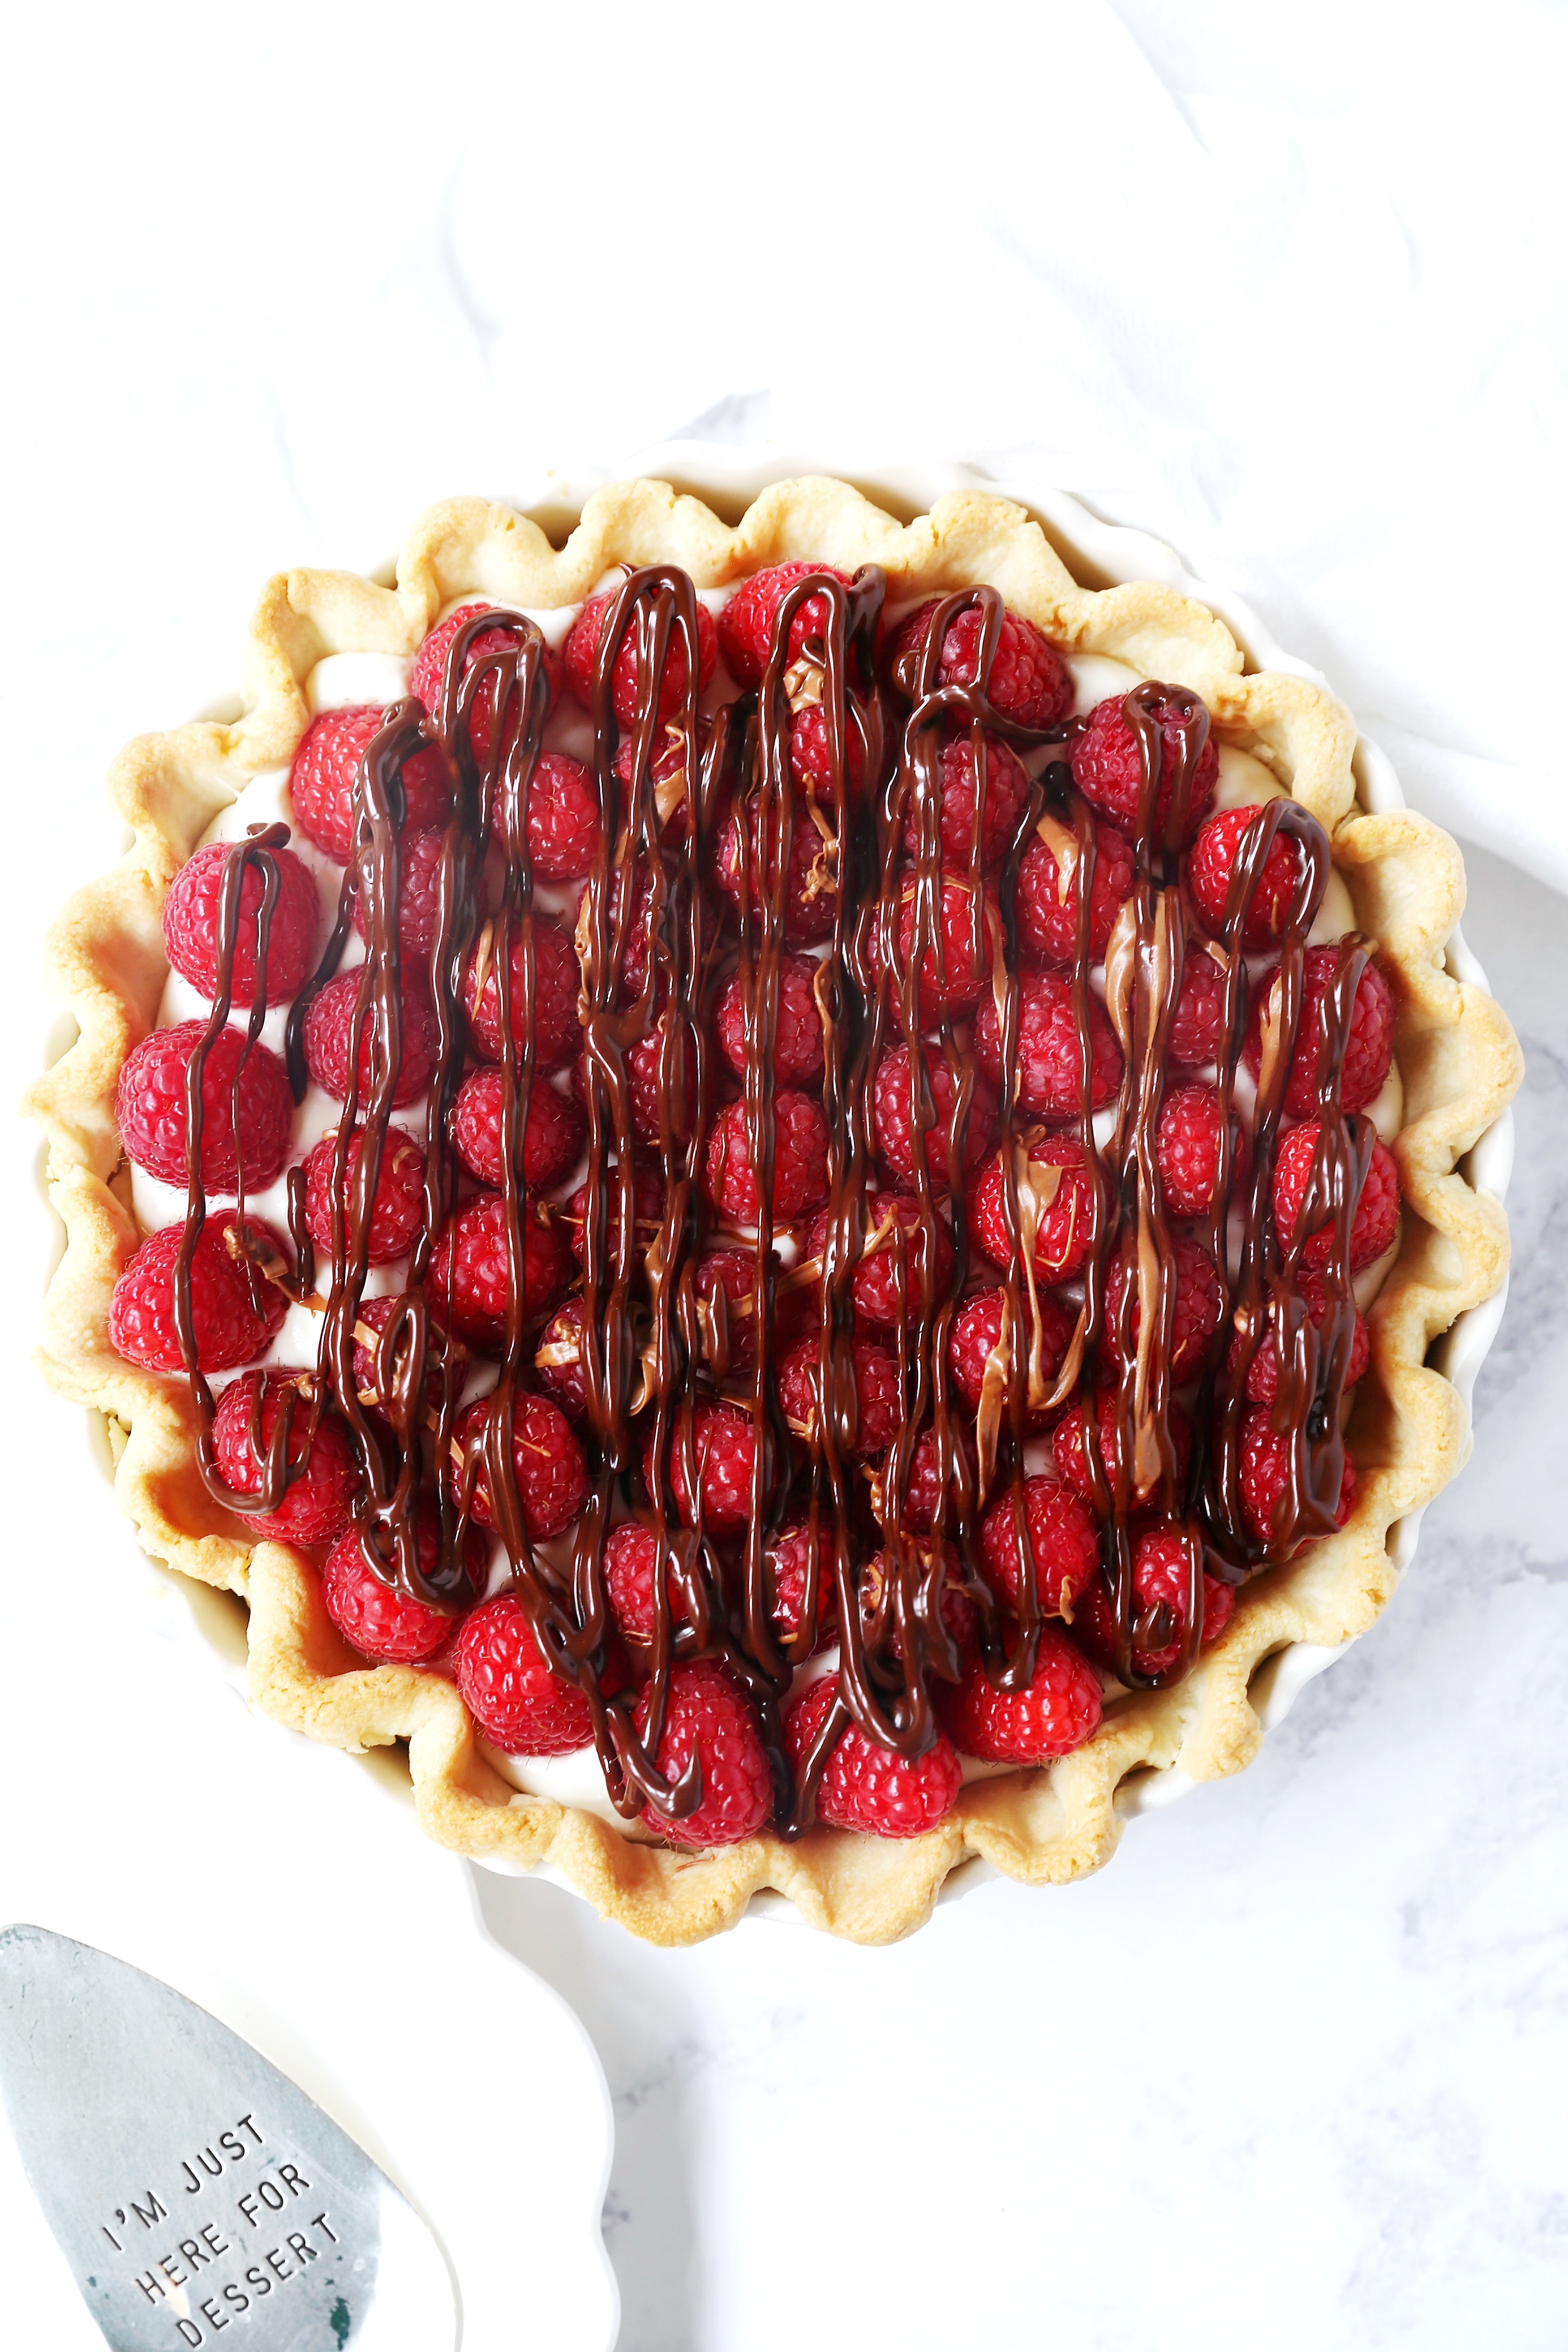 Raspberry Almond Cream Cheese Pie. A simple cream cheese almond pie with fresh raspberries and chocolate drizzle. An award-winning easy pie recipe! www.modernhoney.com #creamcheesepie #raspberrypie #pie #pierecipe #driscolls